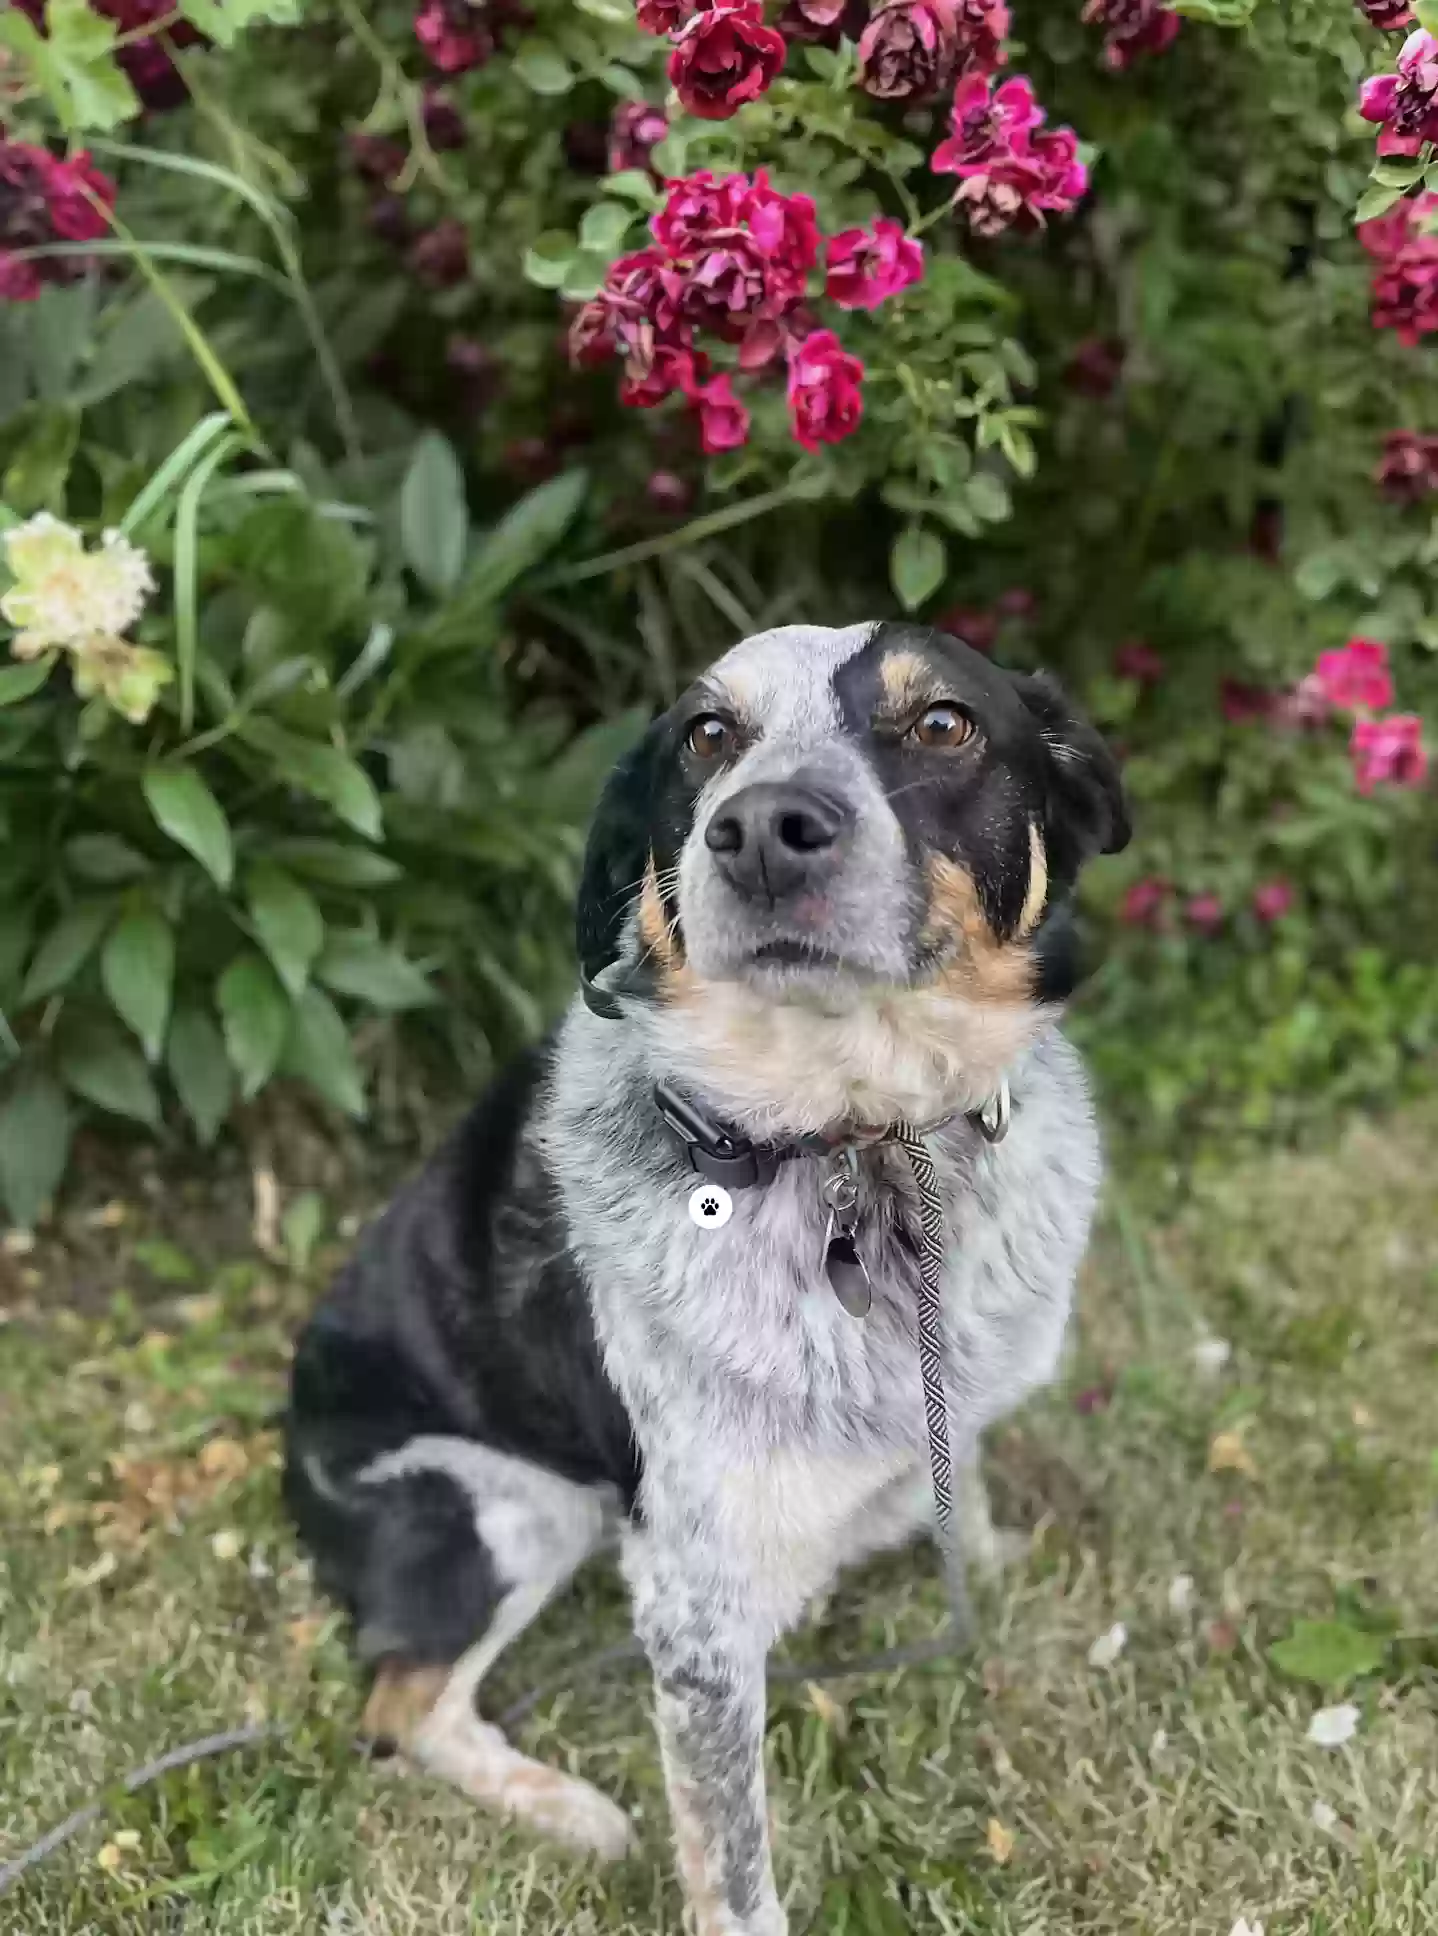 adoptable Dog in Salt Lake City,UT named Toby